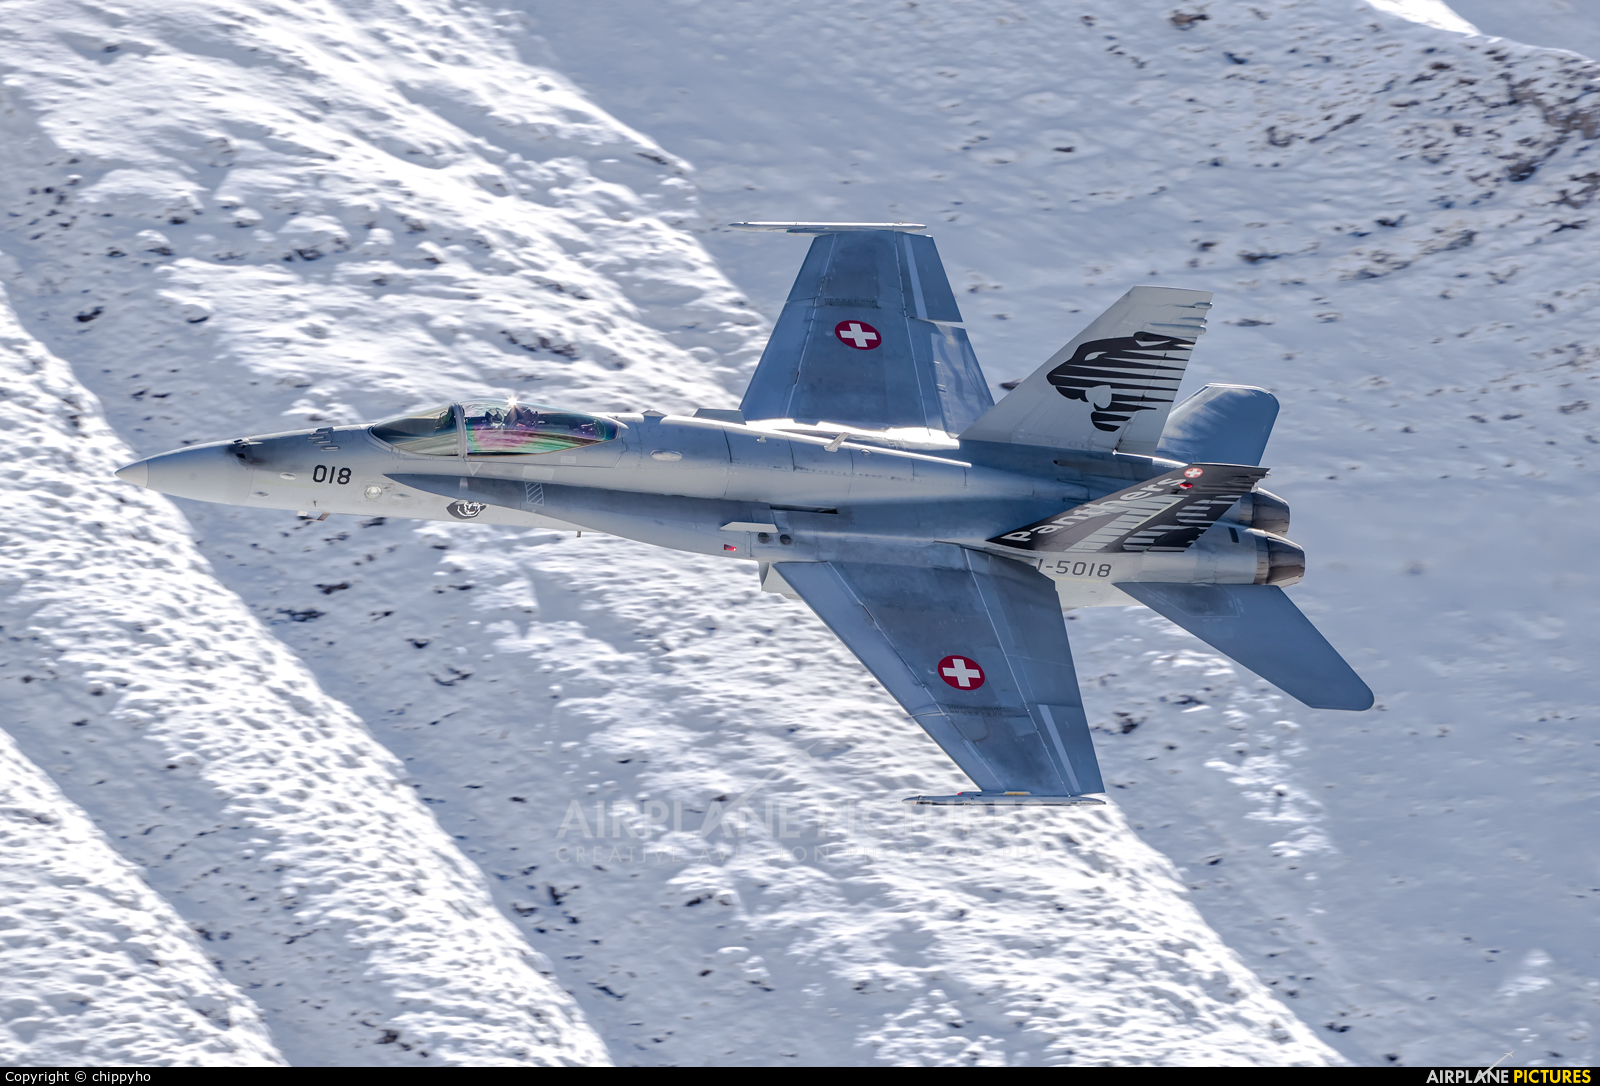 Switzerland - Air Force J-5018 aircraft at Axalp - Ebenfluh Range